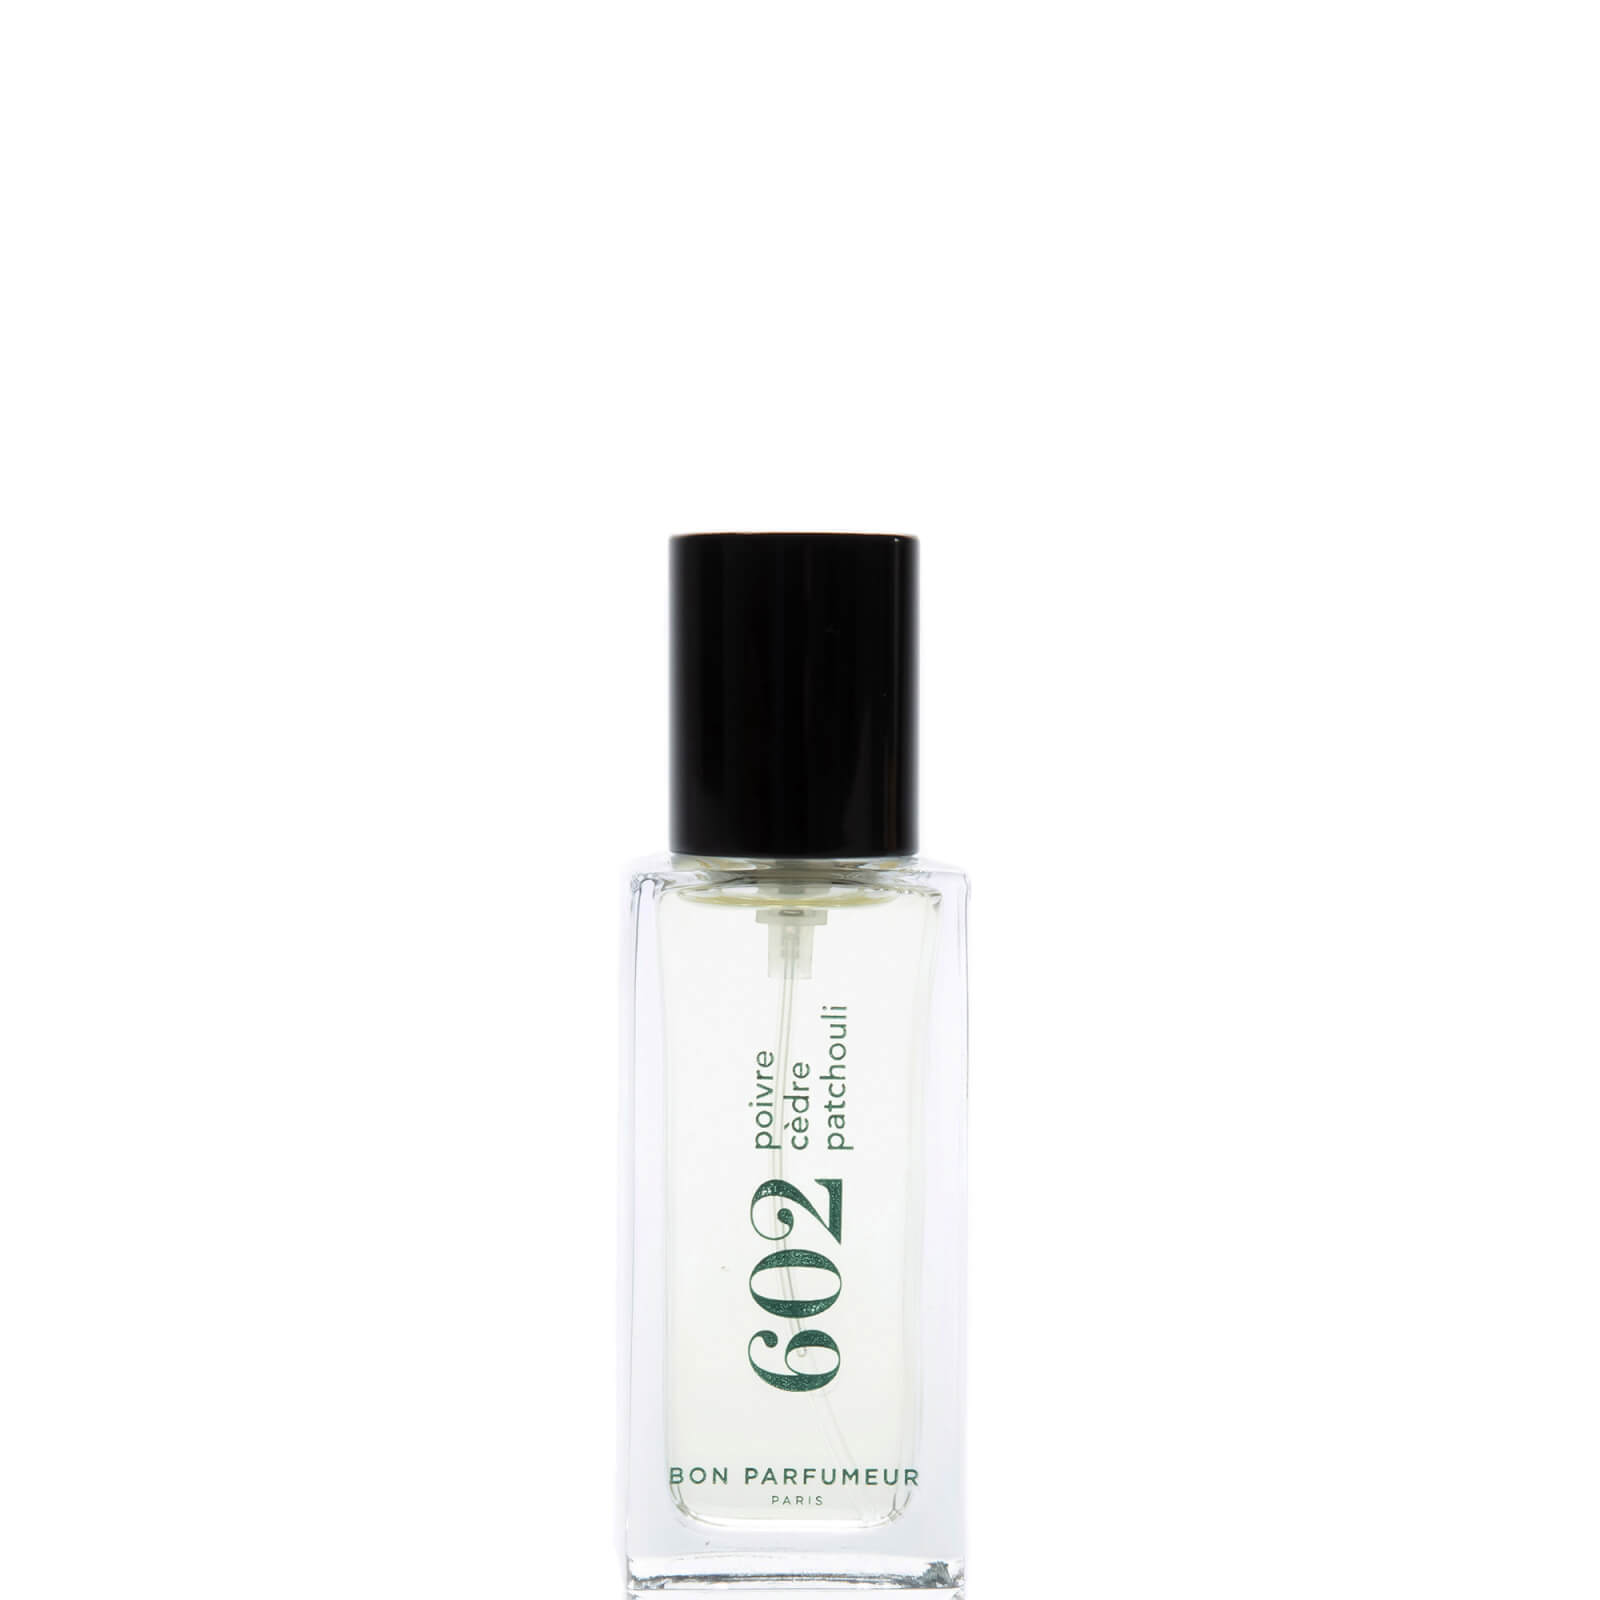 Photos - Women's Fragrance Bon Parfumeur 602 Pepper Cedar Patchouli Eau de Parfum - 15ml BP602EDP15 